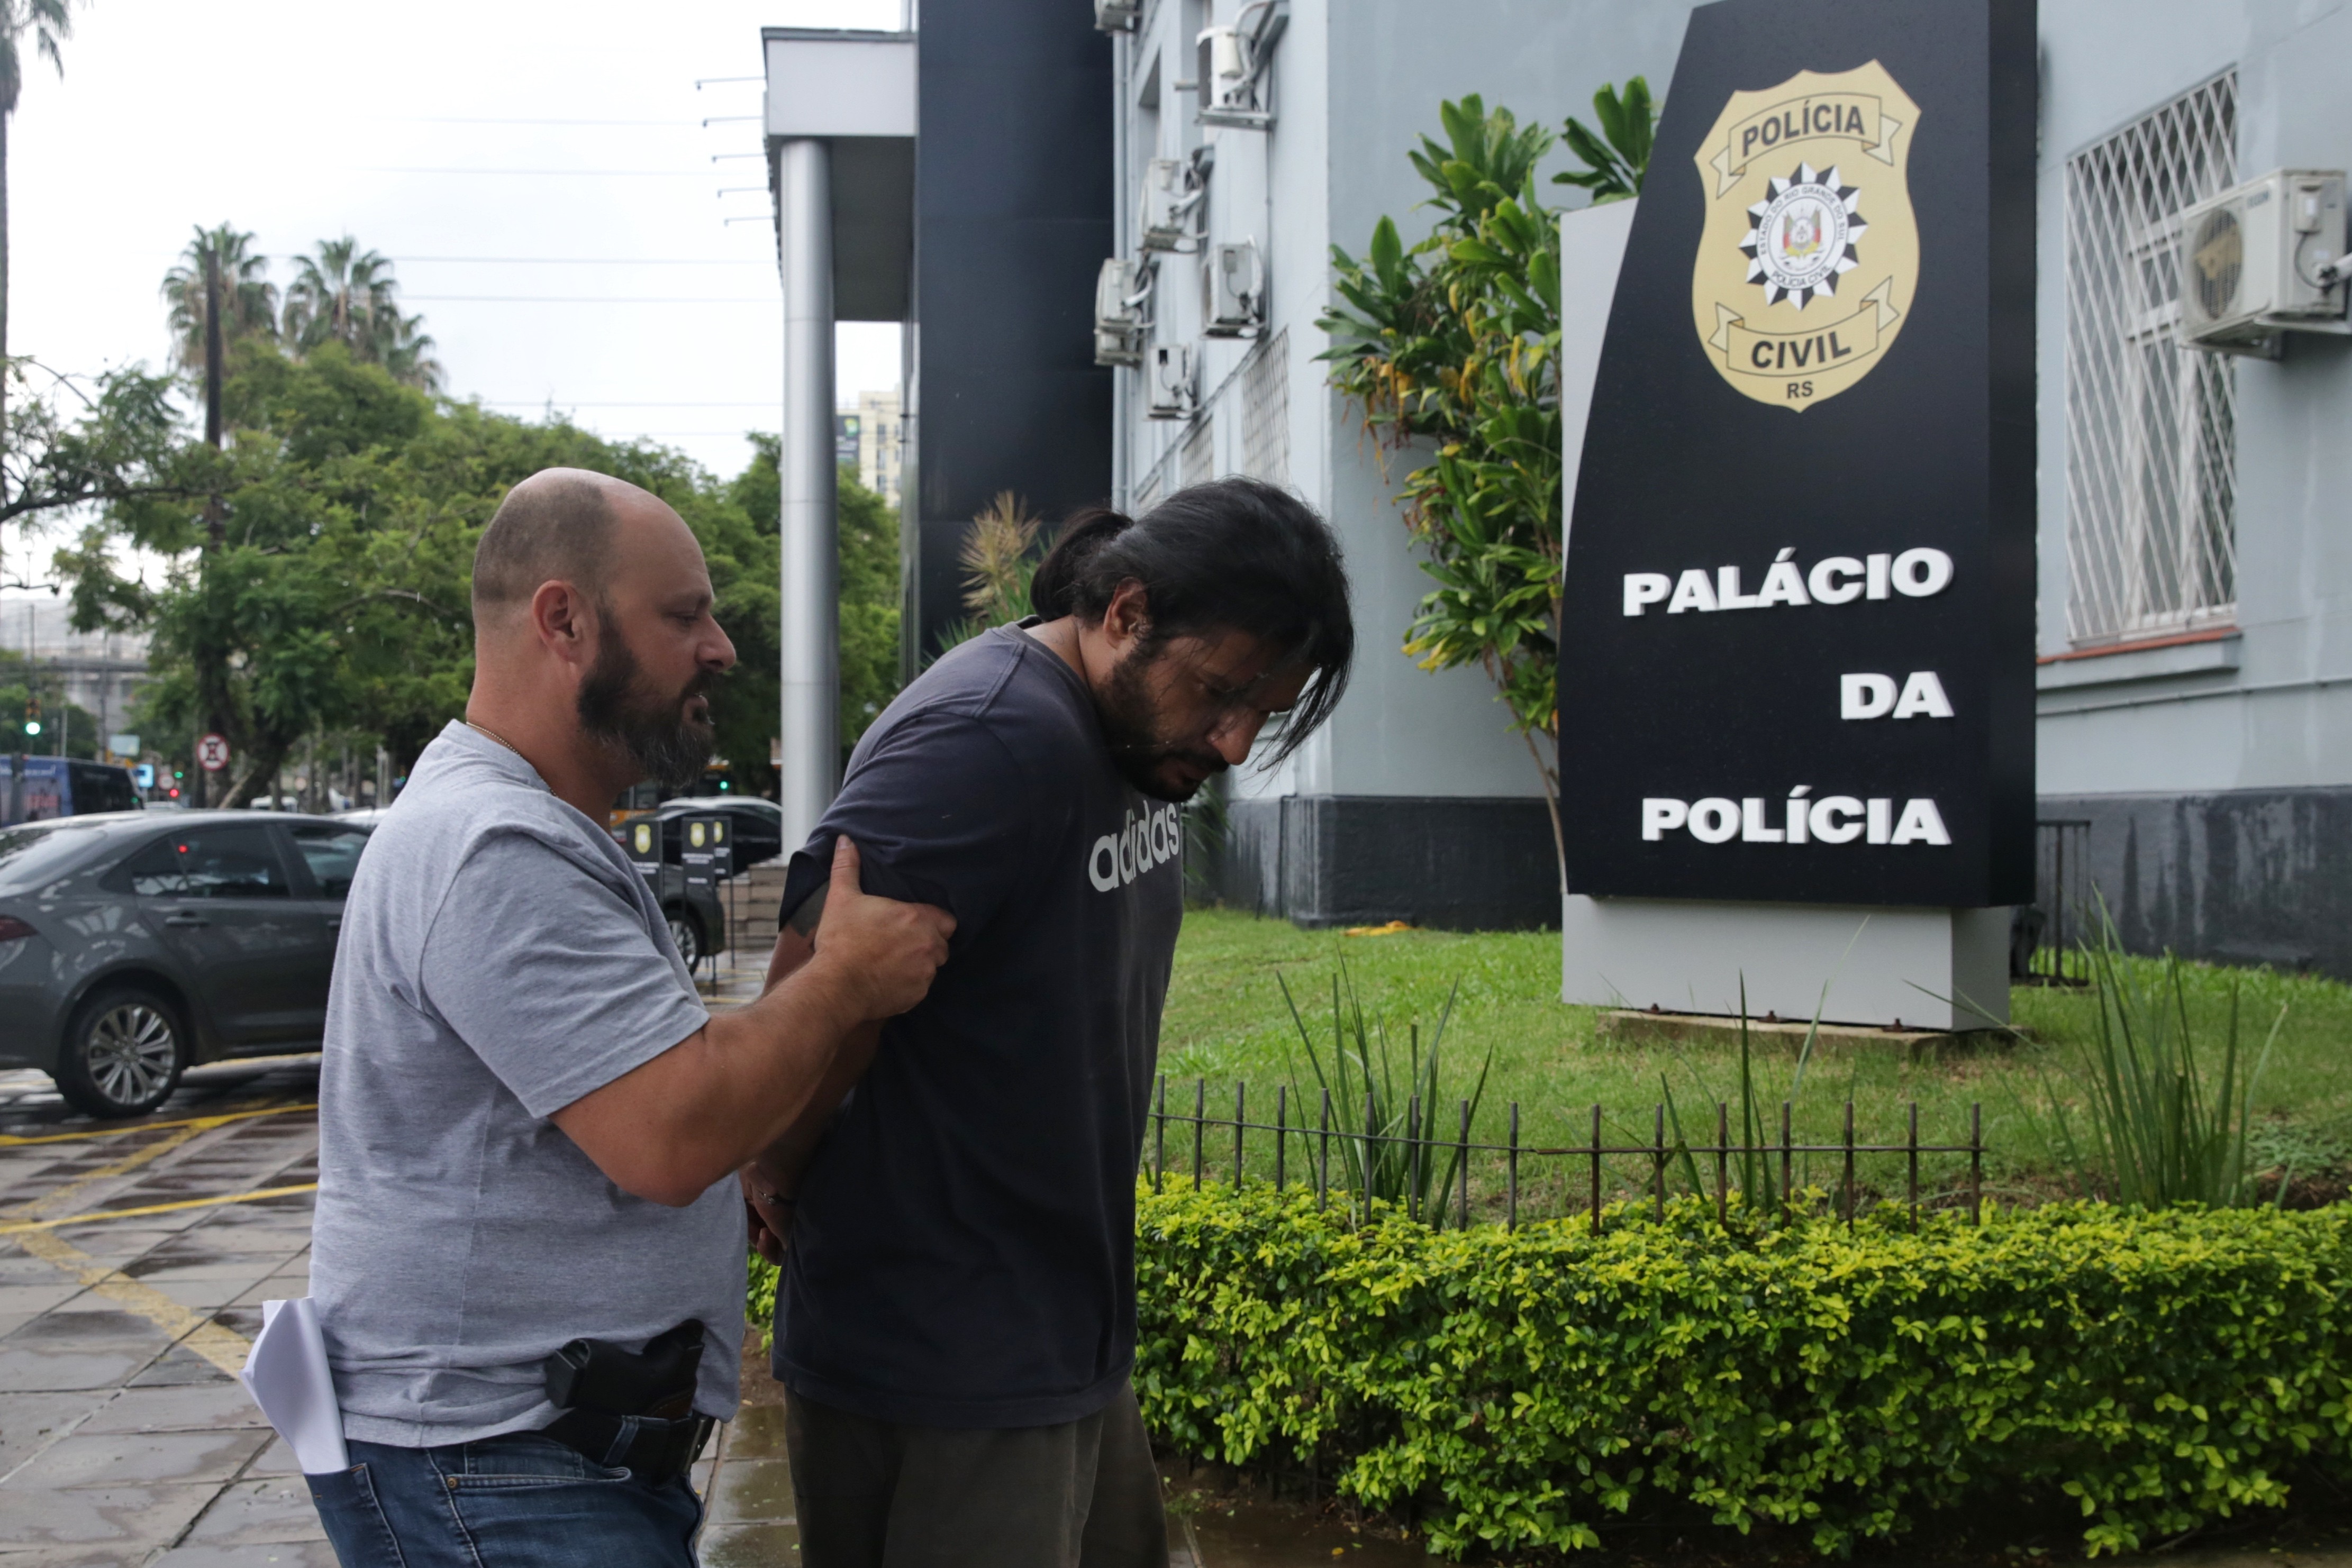 Suspeito de matar namorada e carbonizar corpo em lareira é preso em Viamão, diz BM